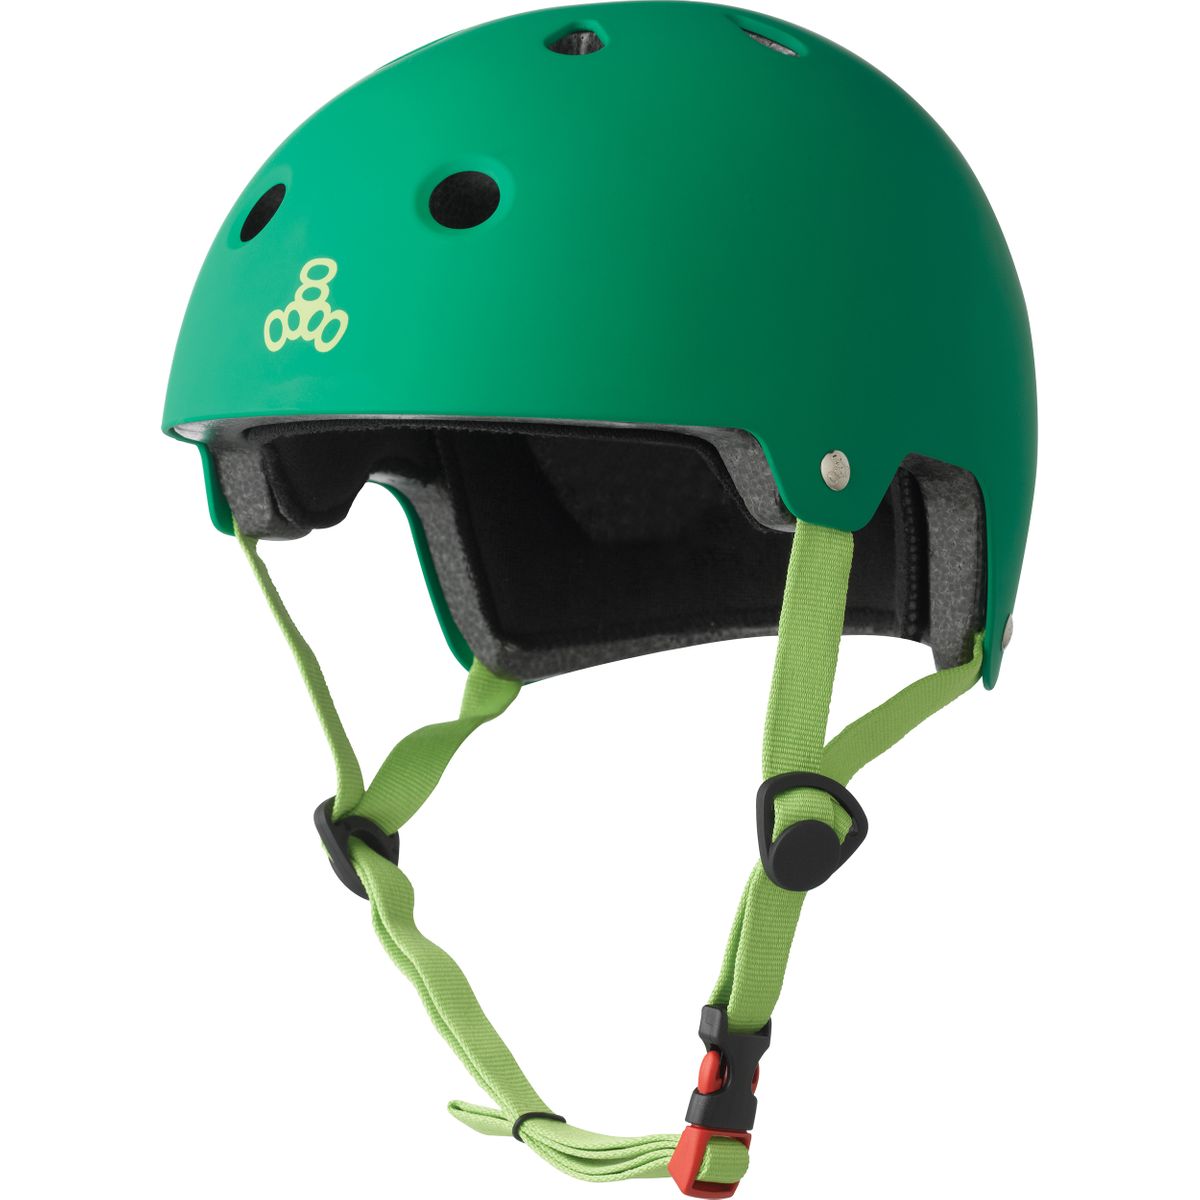 市場 送料無料 トリプルエイト ケリーグリーンマット スケートボードヘルメット デュアルサーティファイドバイク